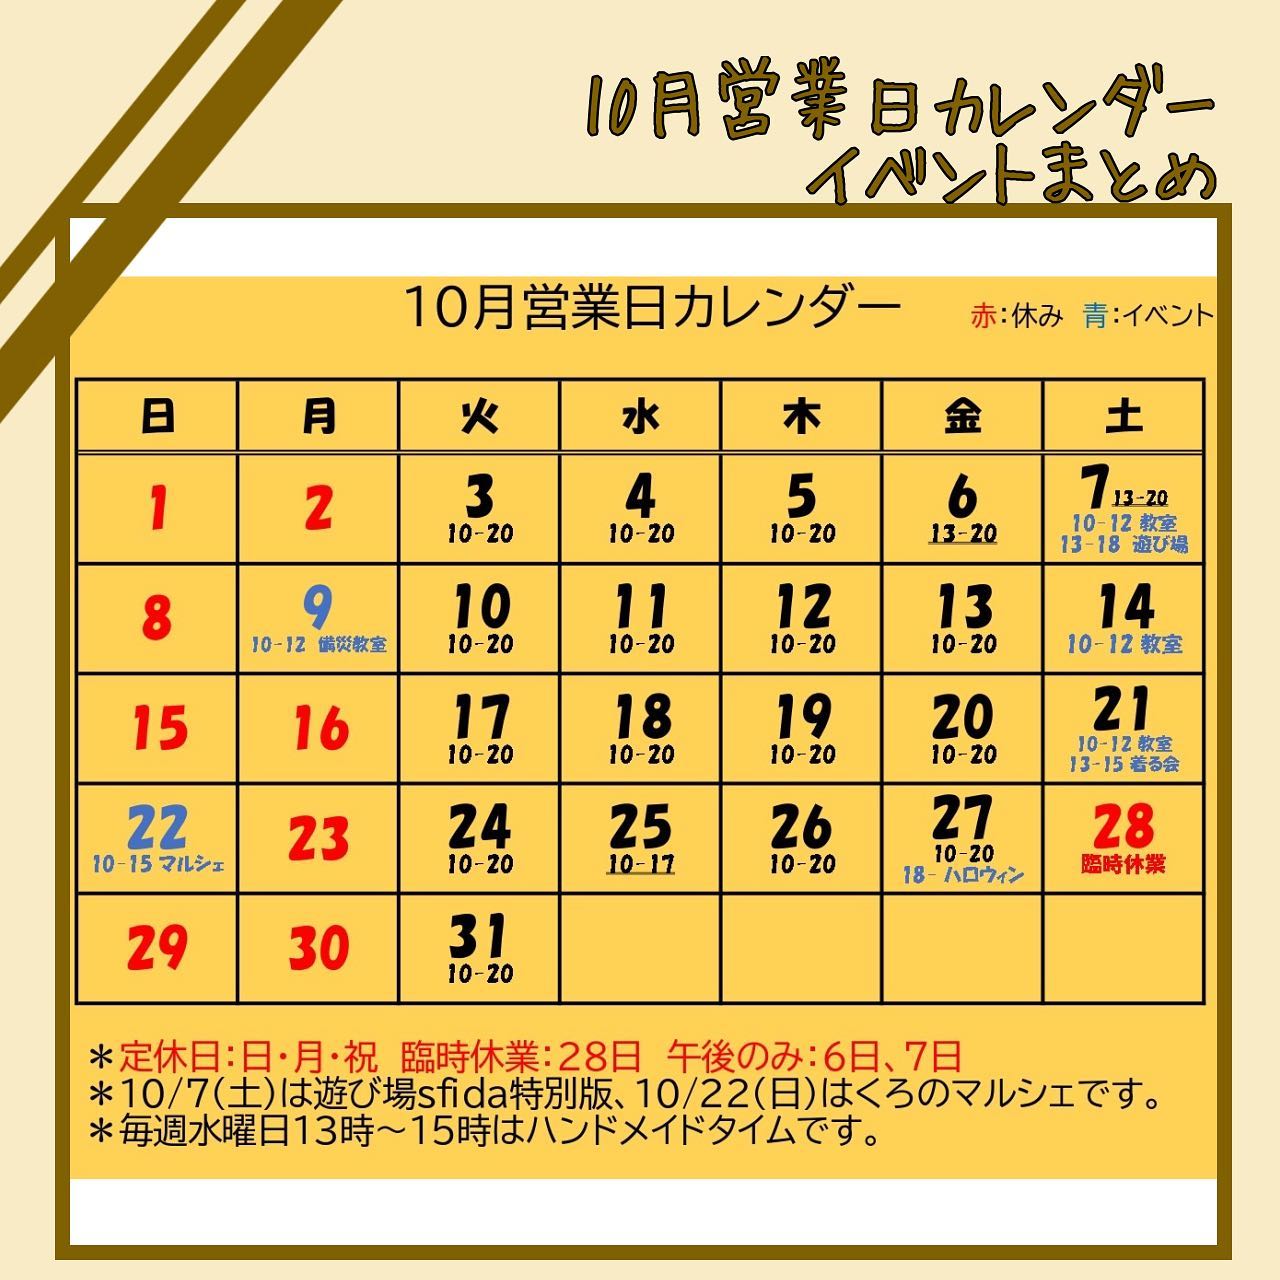 【10月営業日カレンダー】